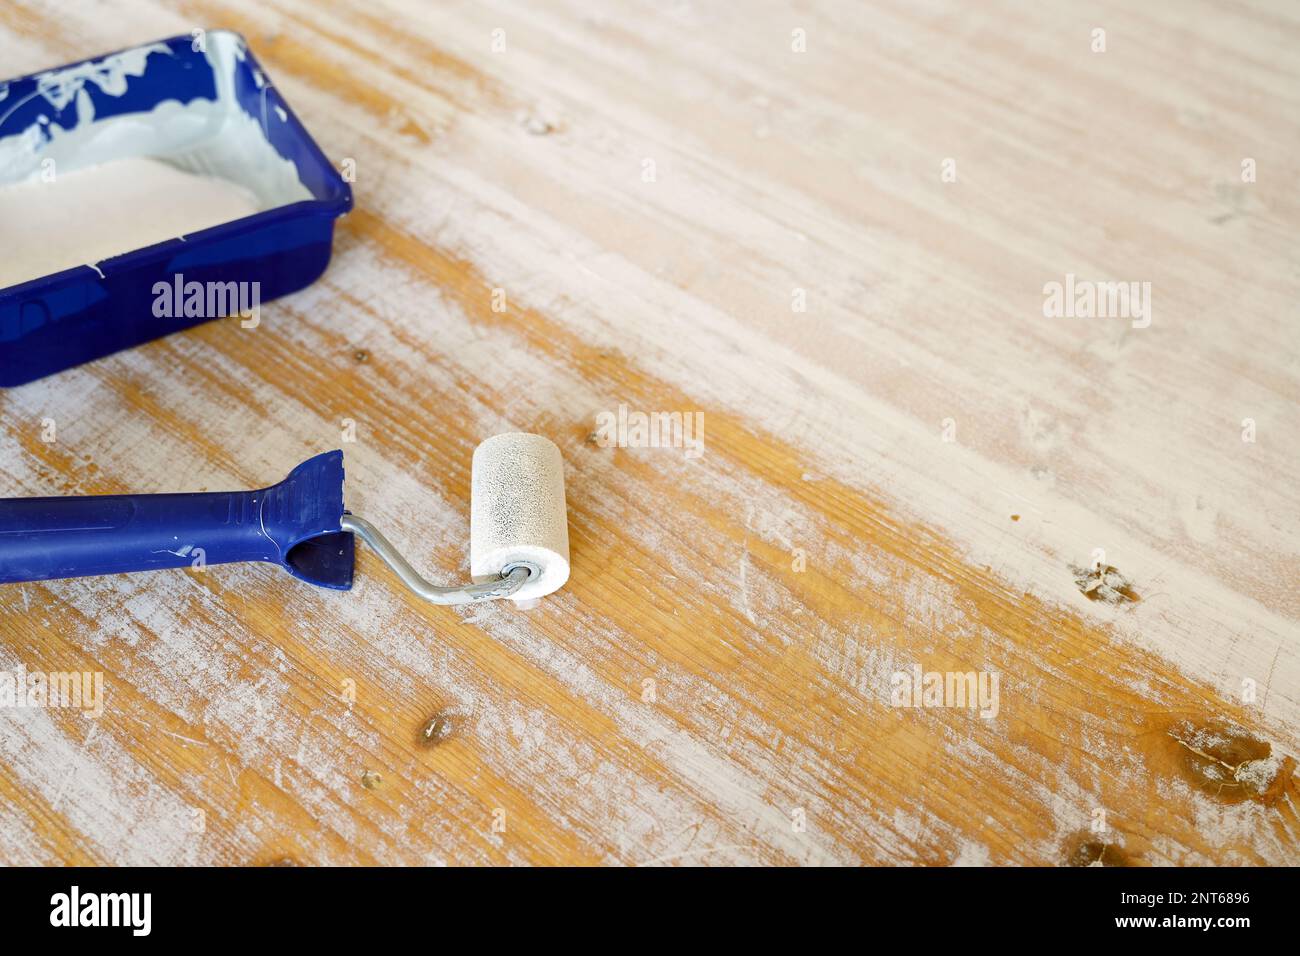 Lacca bianca in un vassoio di vernice blu e rullo per rinnovare il rivestimento su un vecchio tavolo, ristrutturazione di mobili e concetto artigianale, spazio copia, focus selezionato Foto Stock